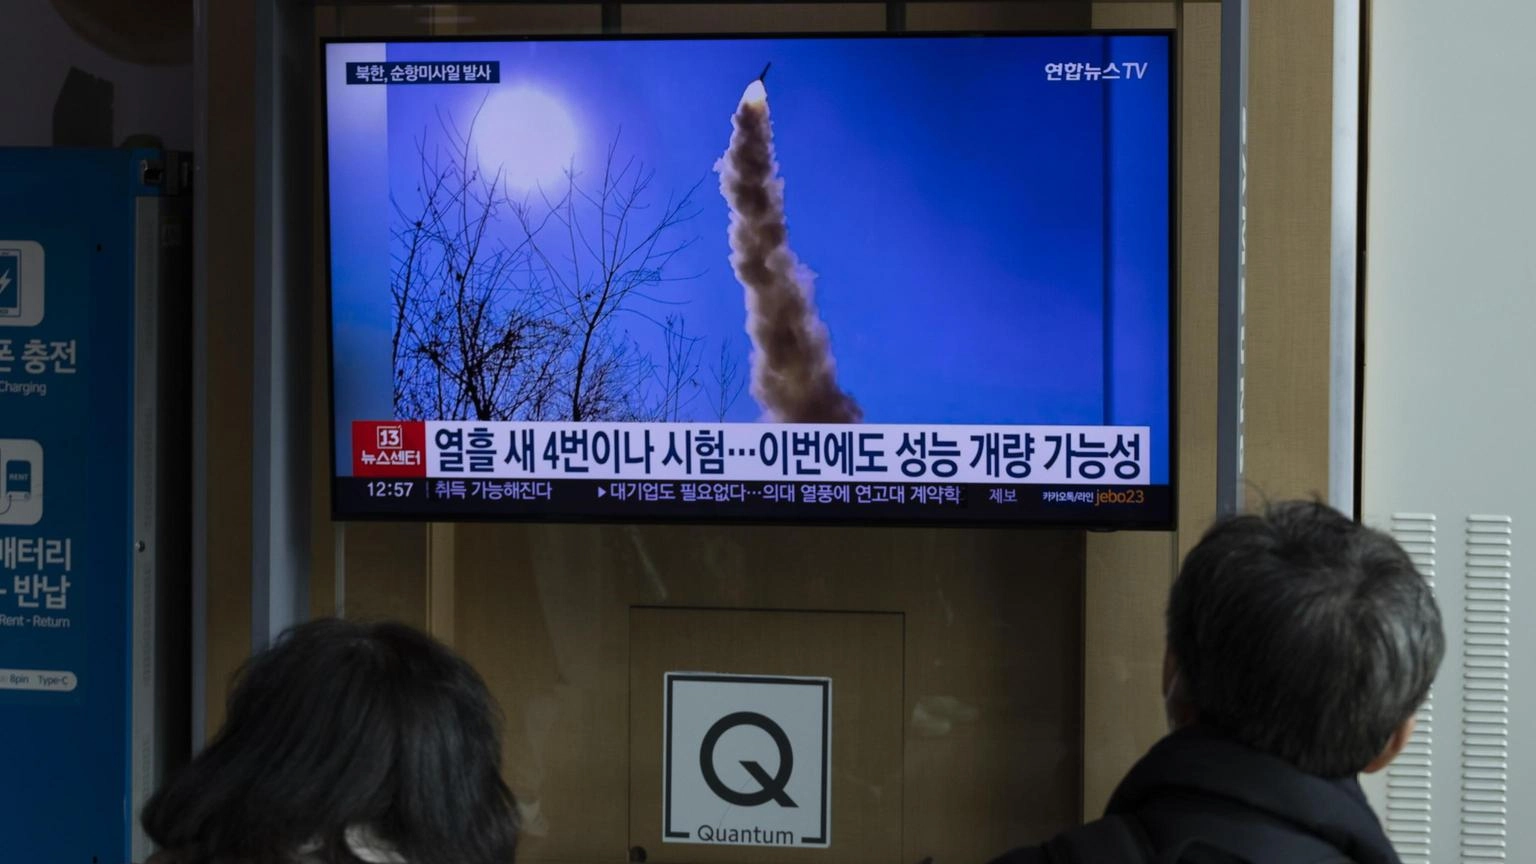 Nord Corea lancia missile balistico nel Mar del Giappone